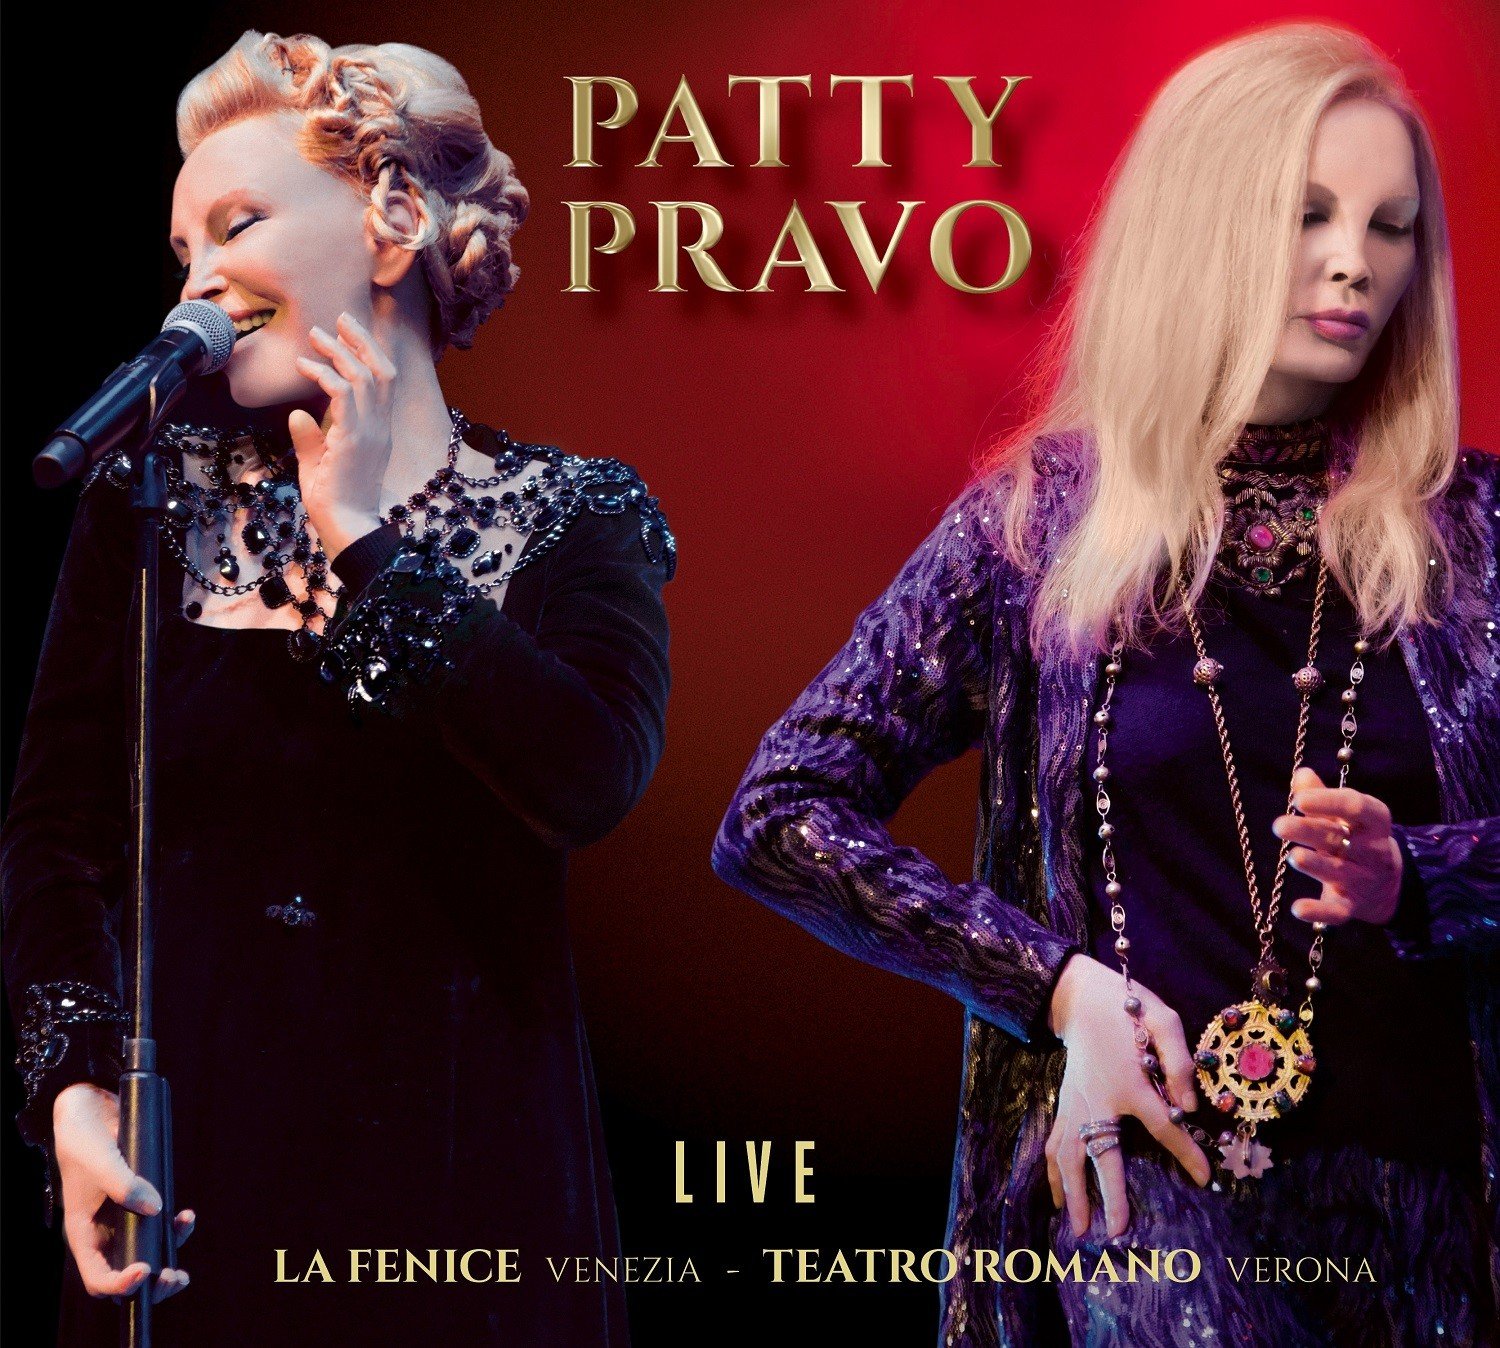 Patty Pravo Live: in un doppio cd le emozioni dei suoi concerti